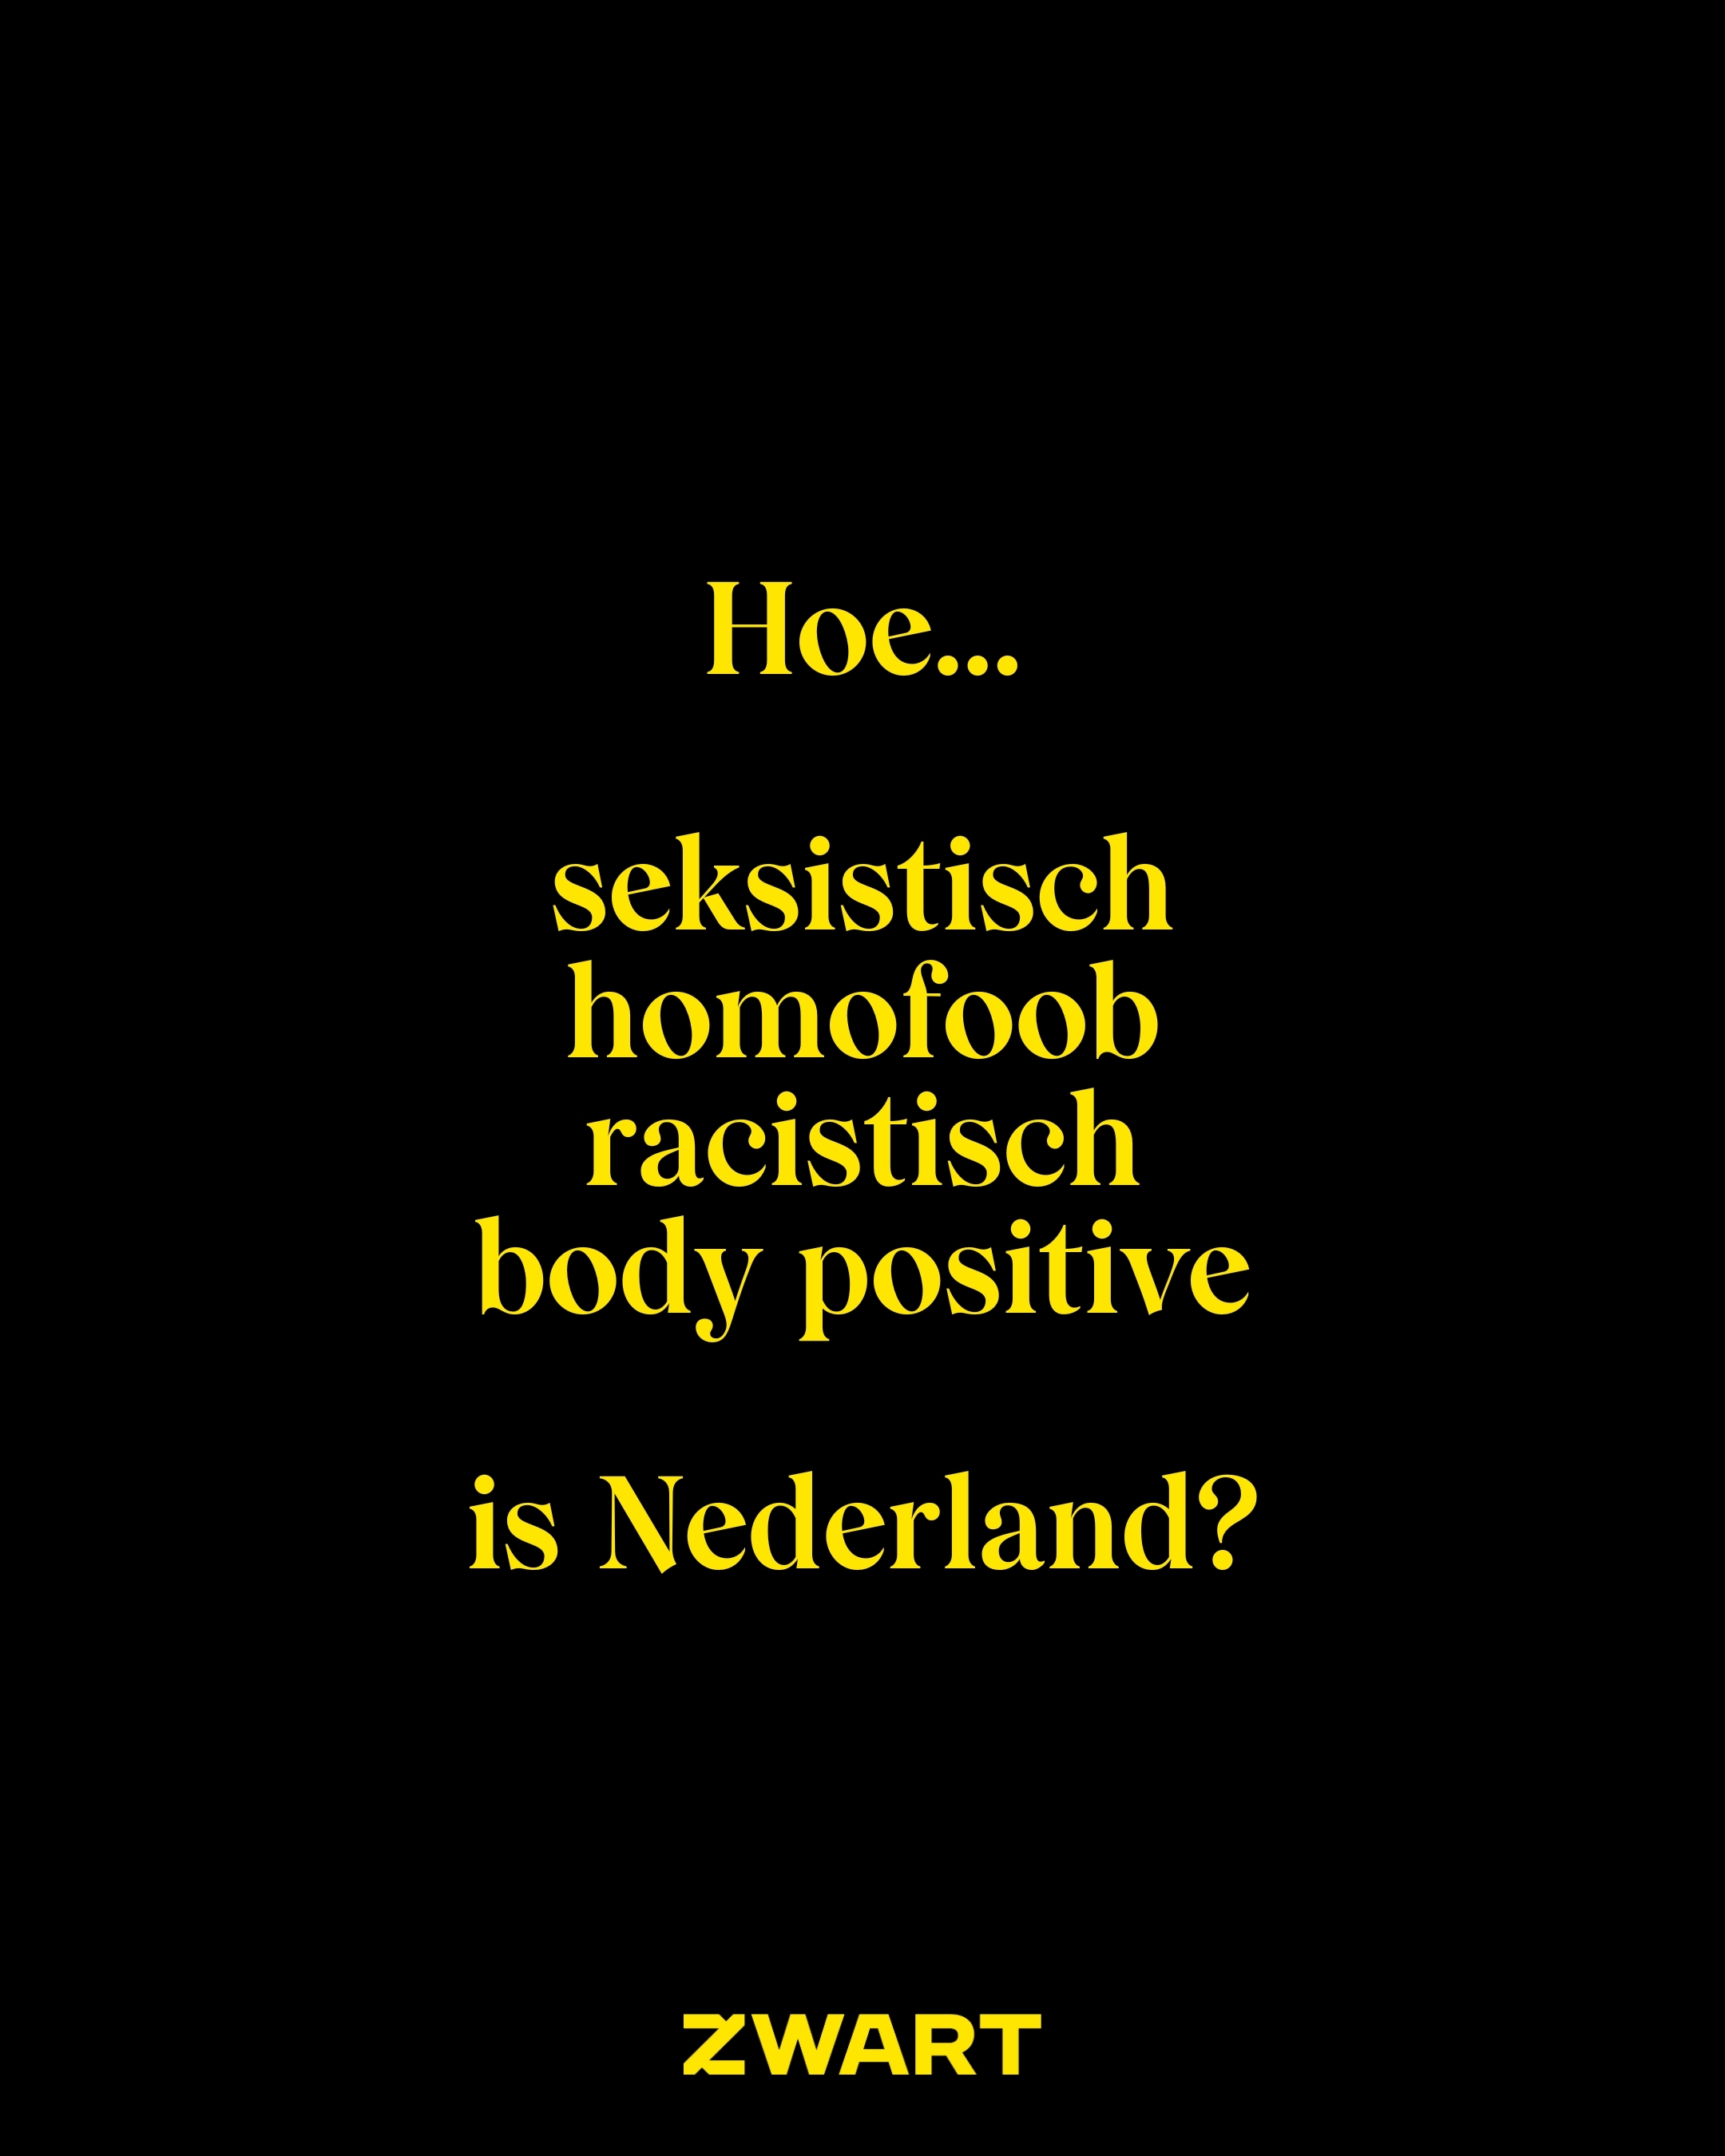 Default image Hoe ... is Nederland?